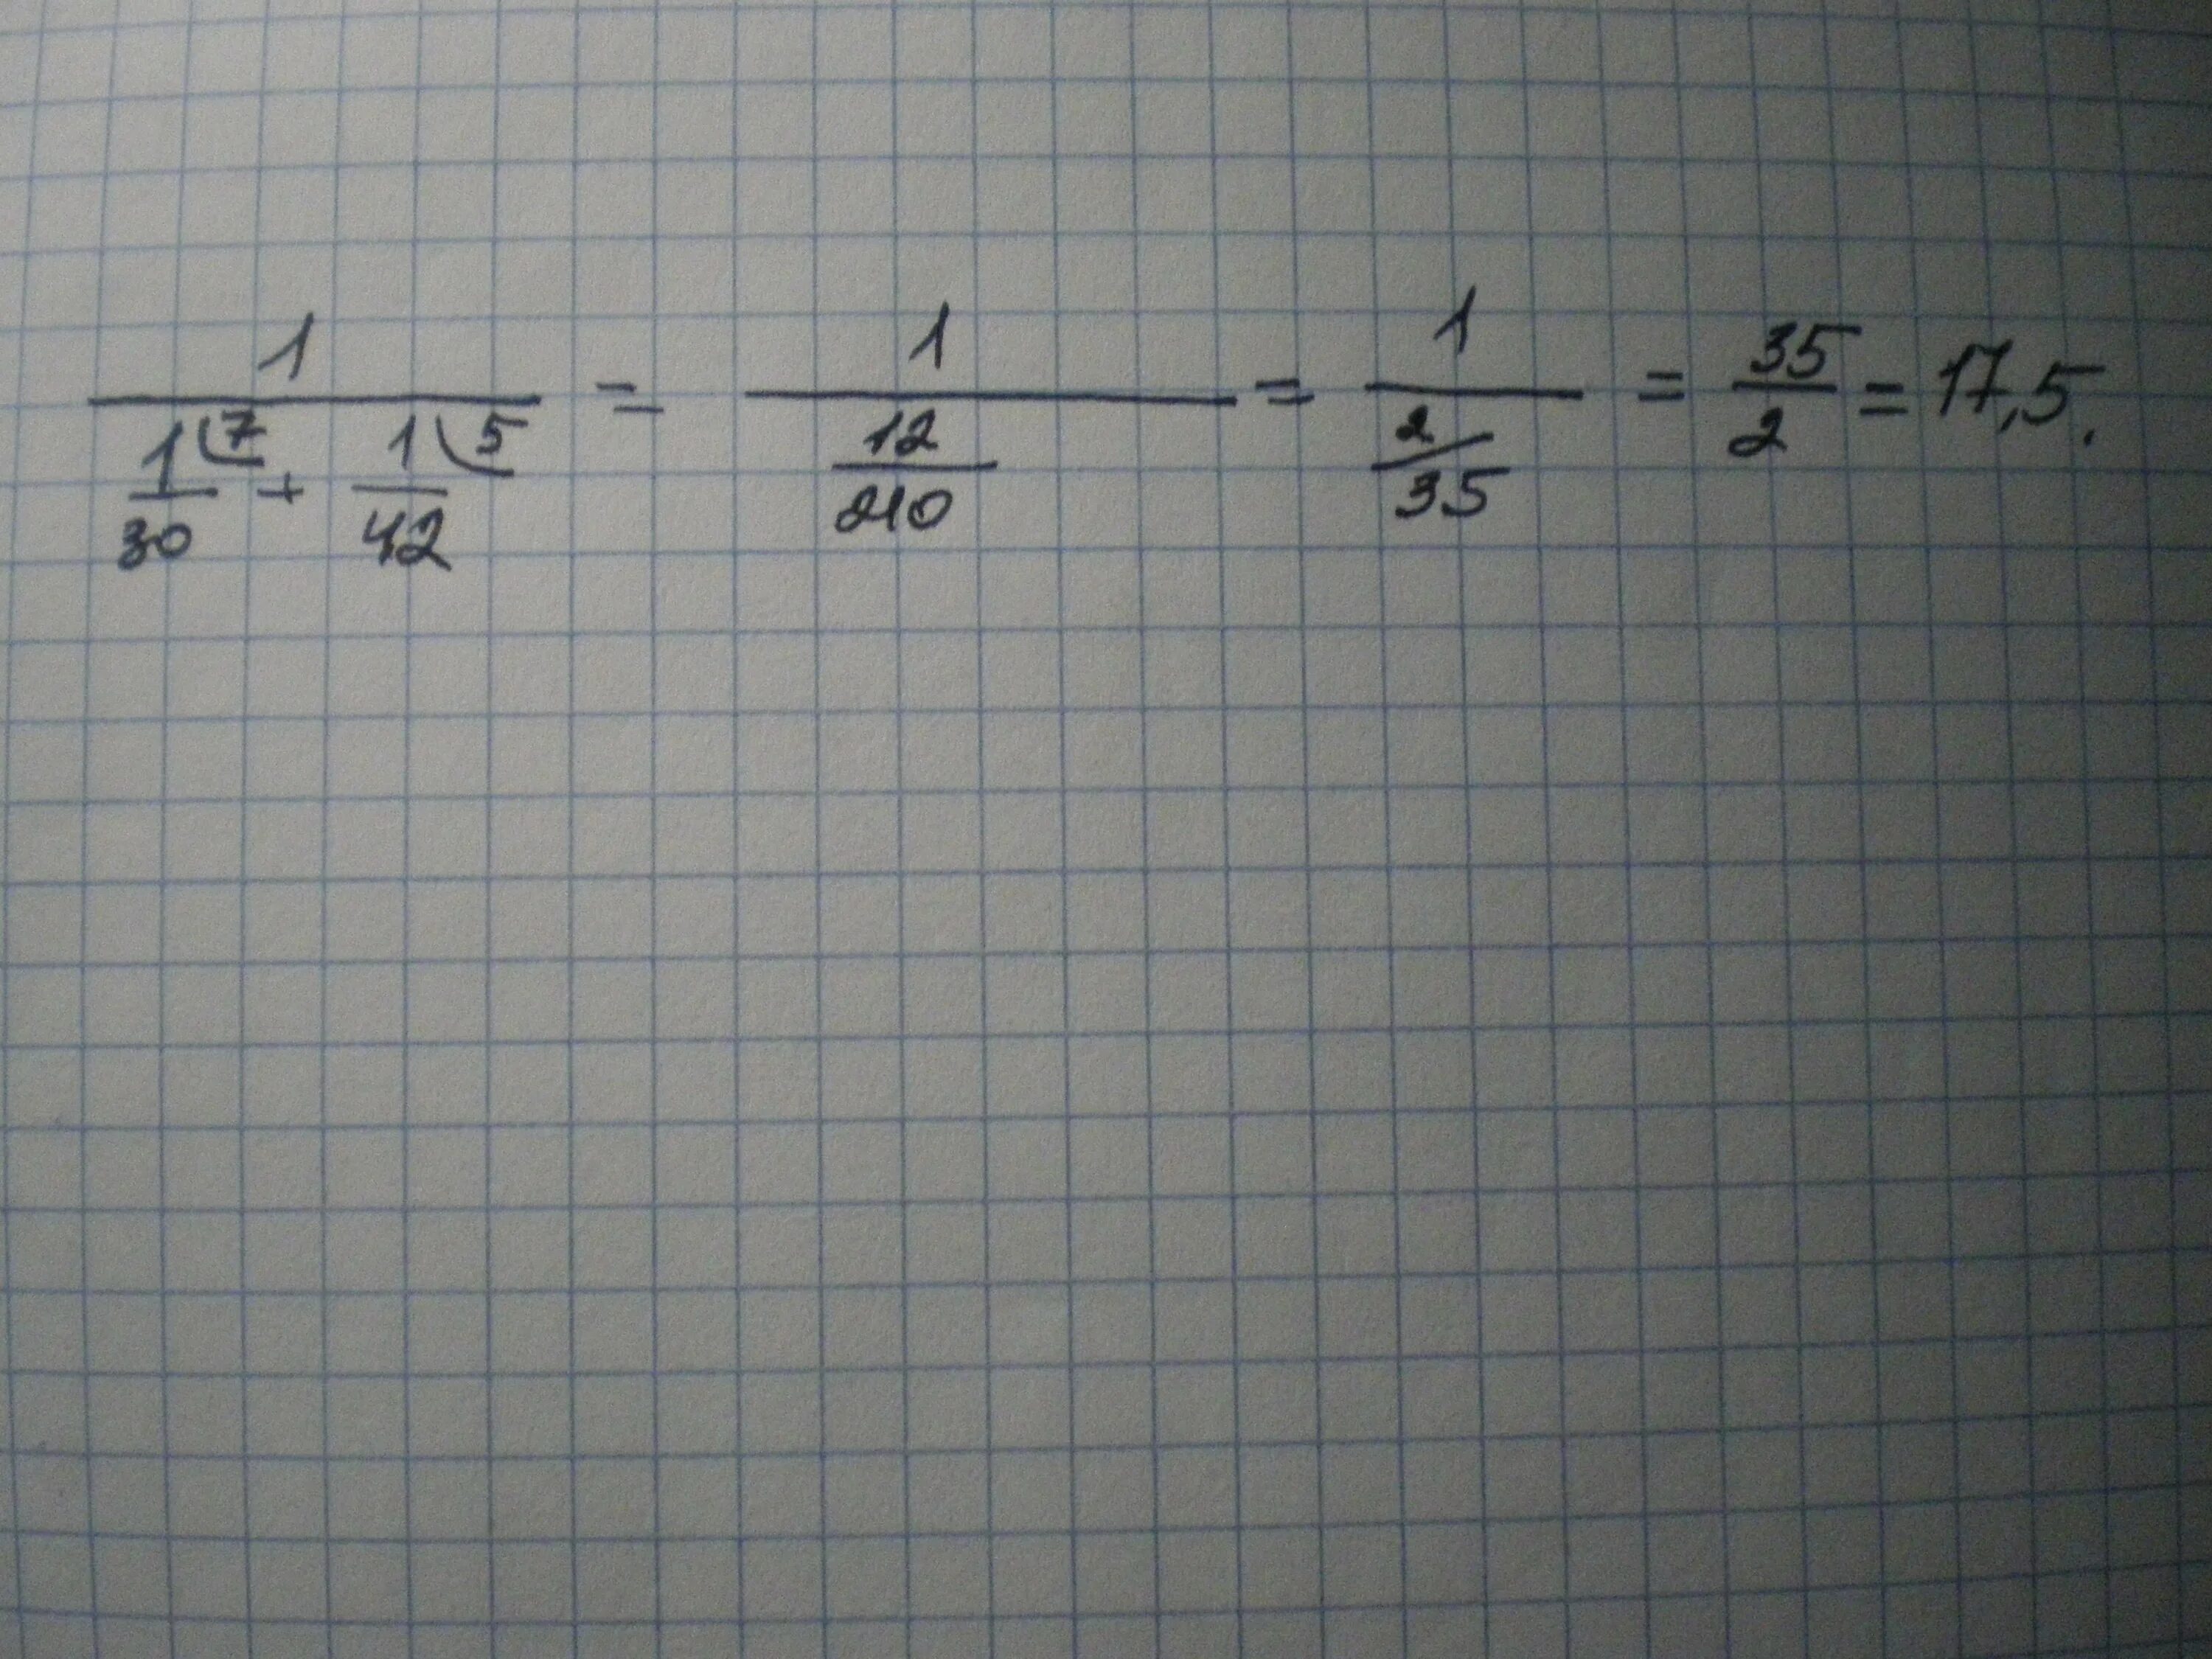 1 6 плюс 1 45. 1/1/30+1/42 Решение. 1 Деленное на 1/30+1/42. 1/1/30+1/42. Найдите значение выражения 1/1/30+1/42.